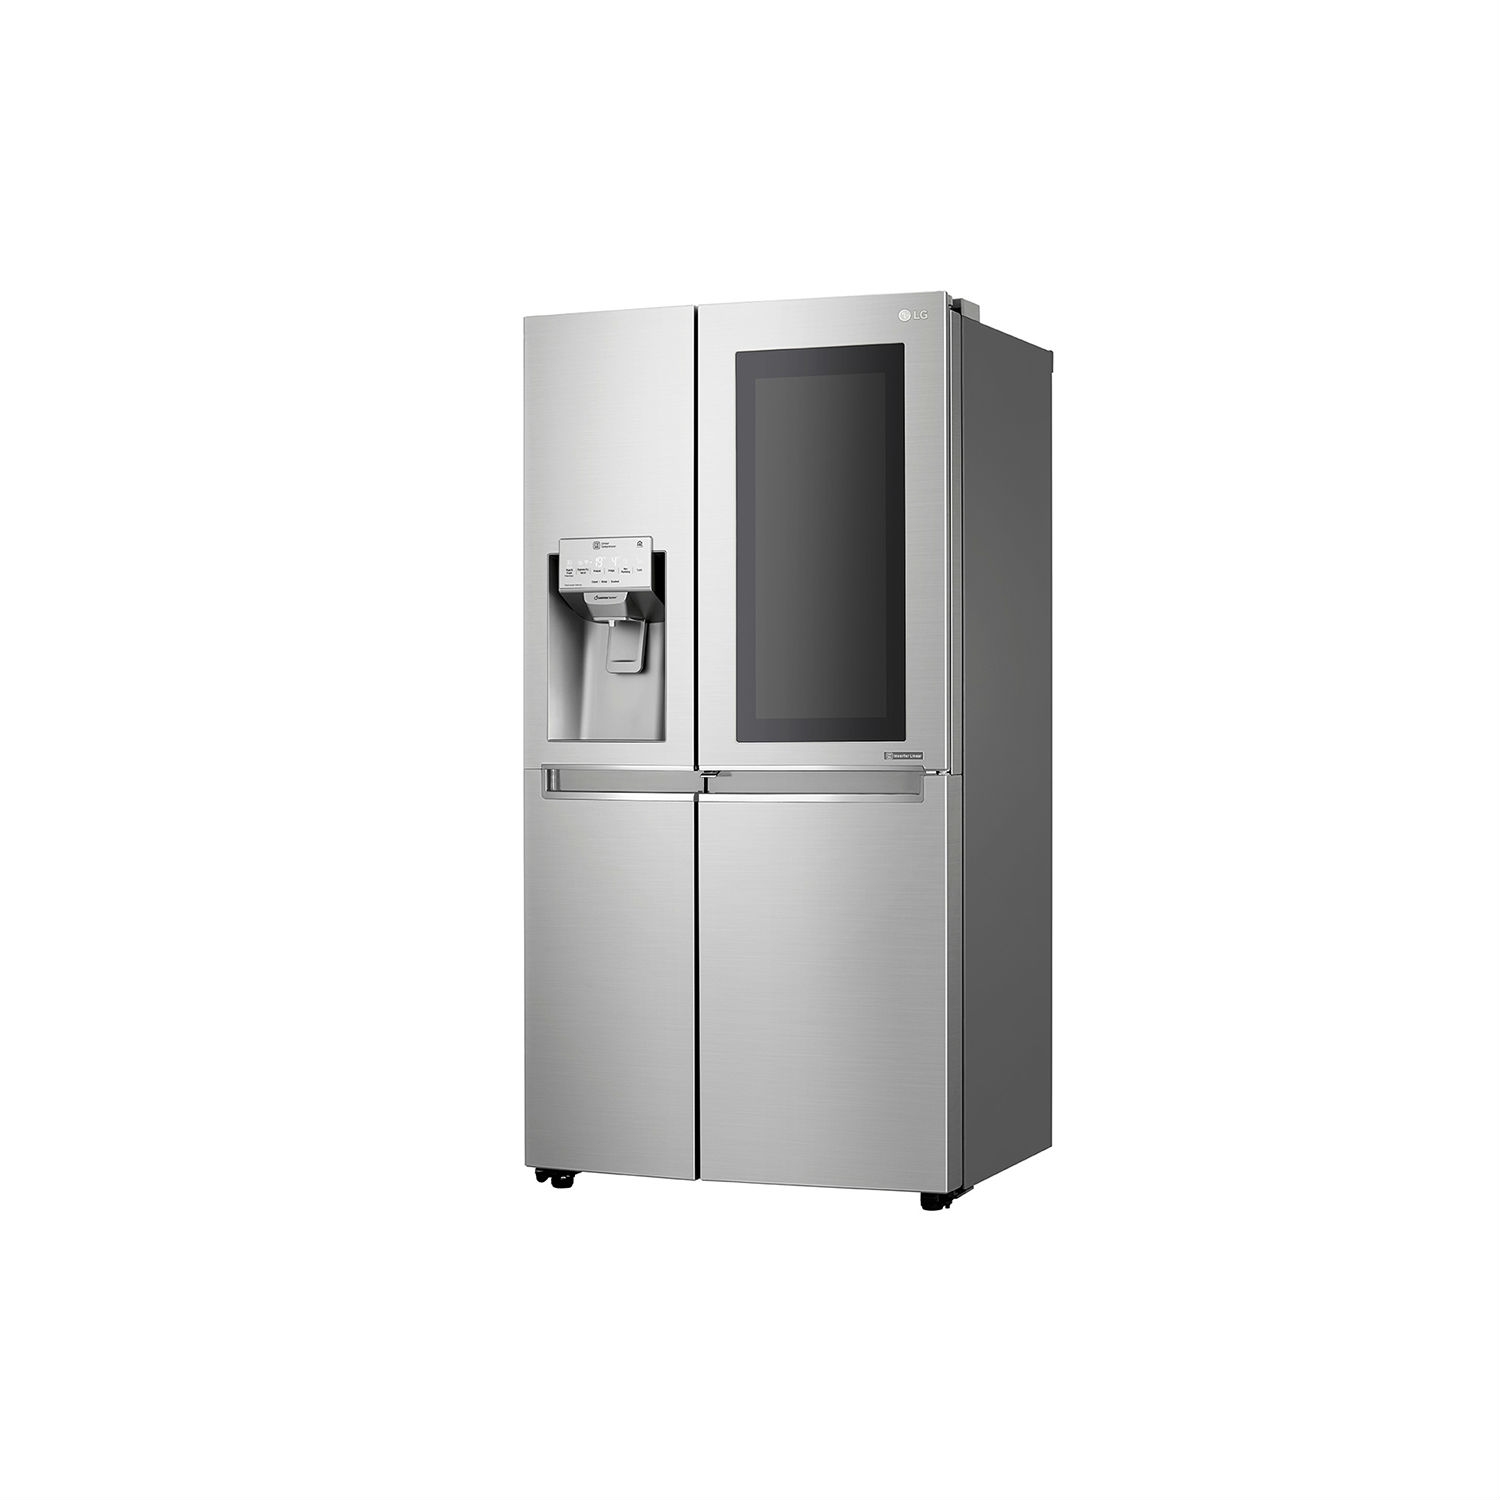 LG ELECTRONICS InstaView Door-in-Door American Style Fridge Freezer - PREMIUM STEEL - A++ Energy Rated - 4